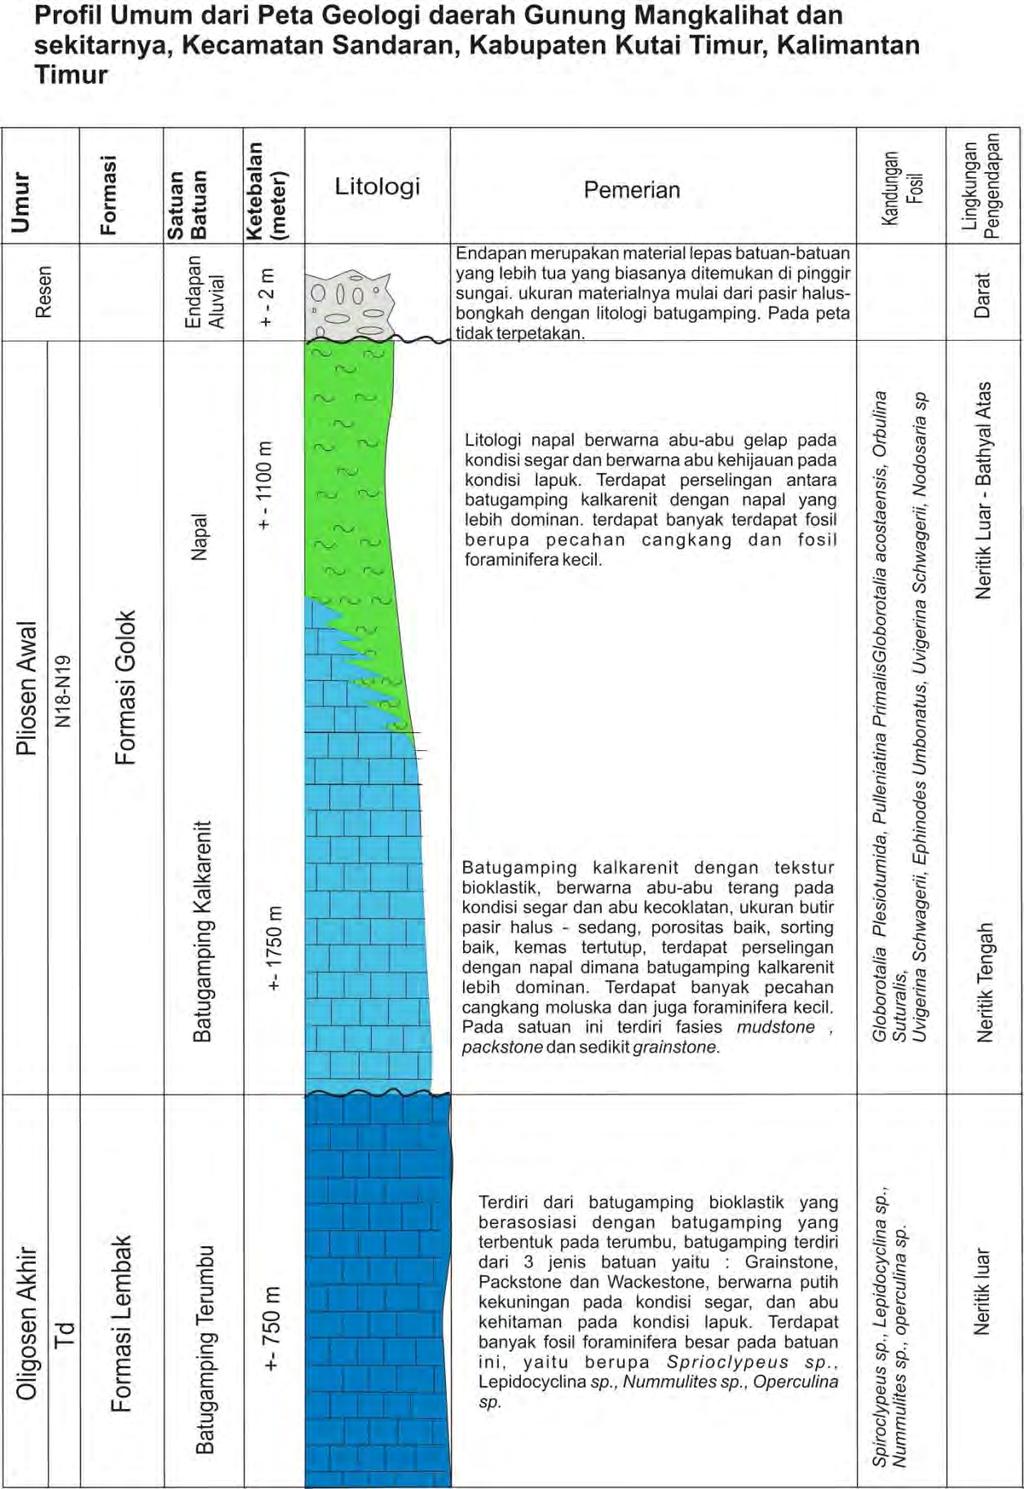 3.2 Stratigrafi Daerah Penelitian Gambar 3.9 Profil umum stratigrafi daerah penelitian.